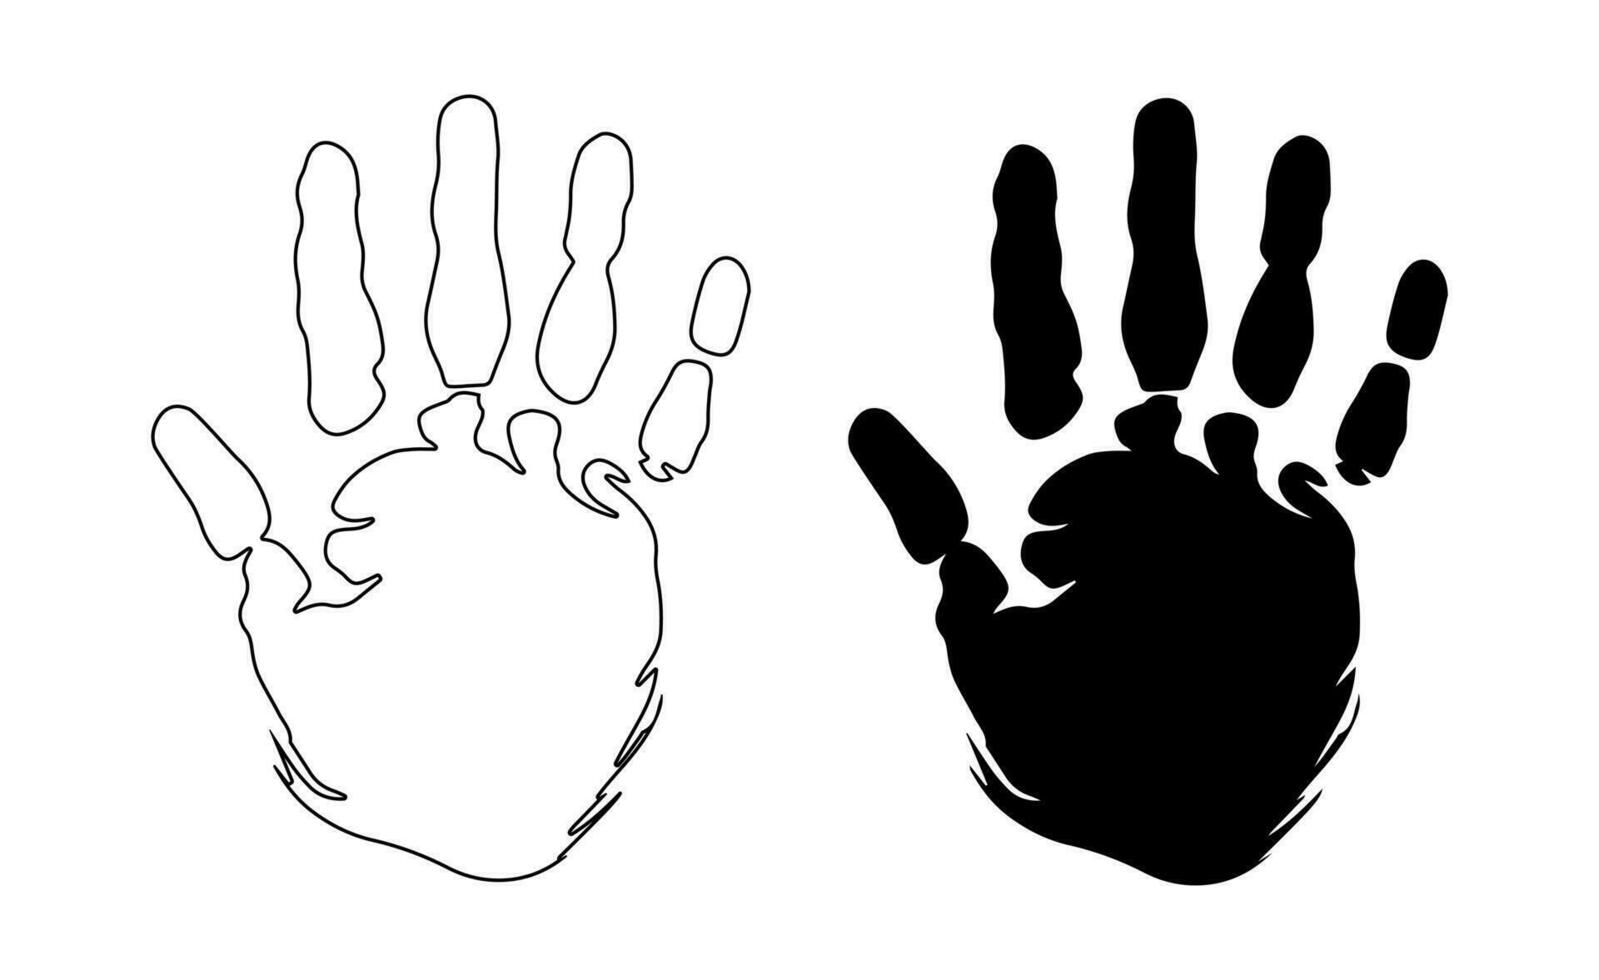 humano huella de la mano imprimir de masculino o hembra mano. silueta, describir. humano palmera. icono. vector aislado en blanco. para diseño, imprimir, ilustración, textil, tarjeta postal, póster